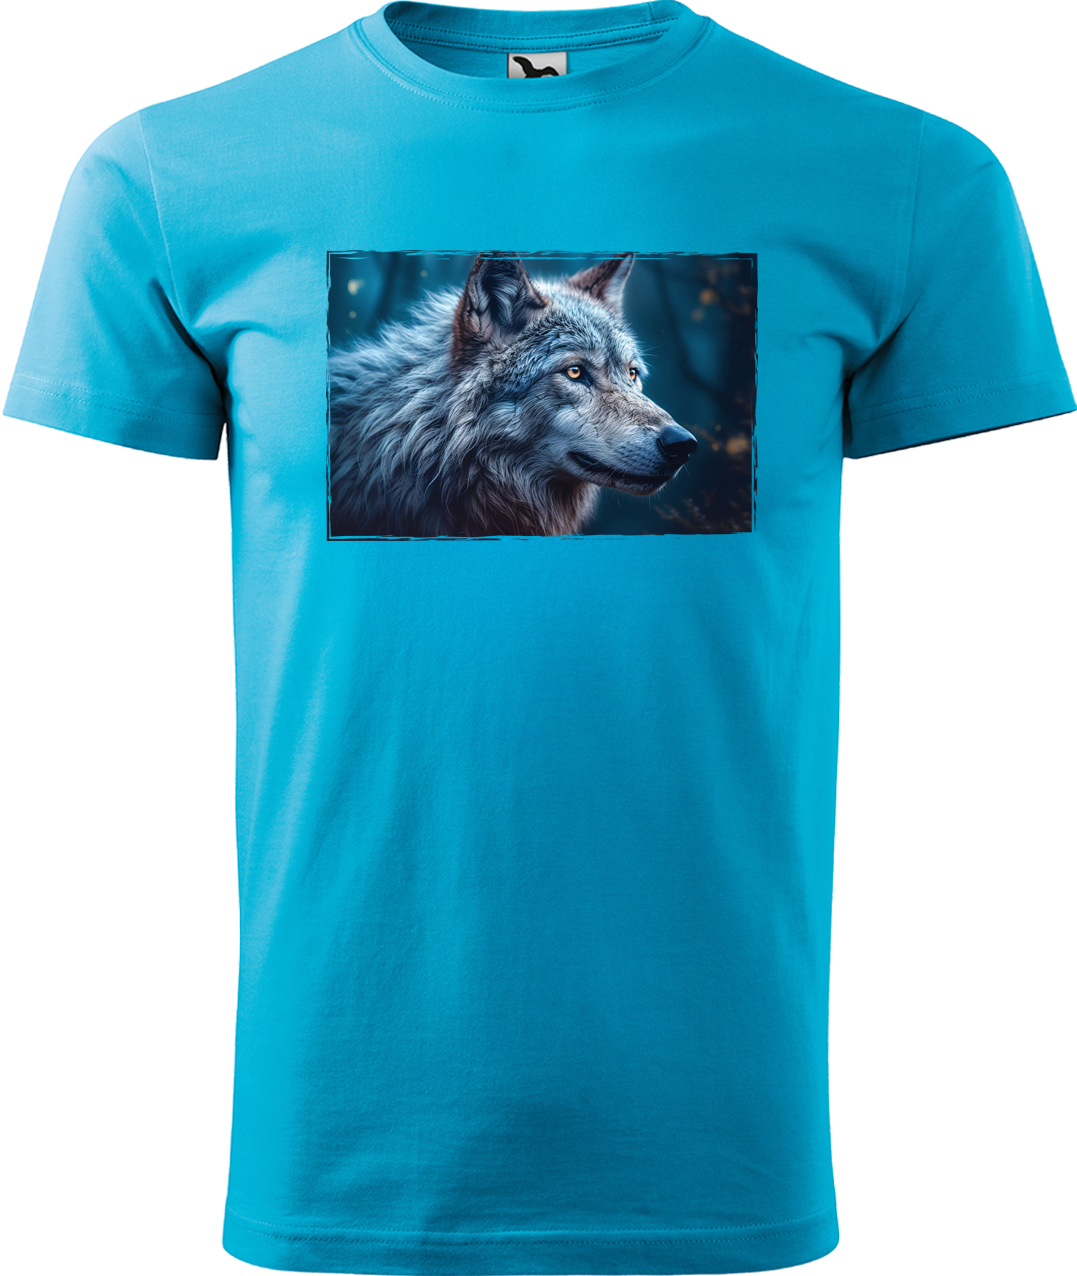 Pánské tričko s vlkem - Modrý vlk Velikost: XL, Barva: Tyrkysová (44)